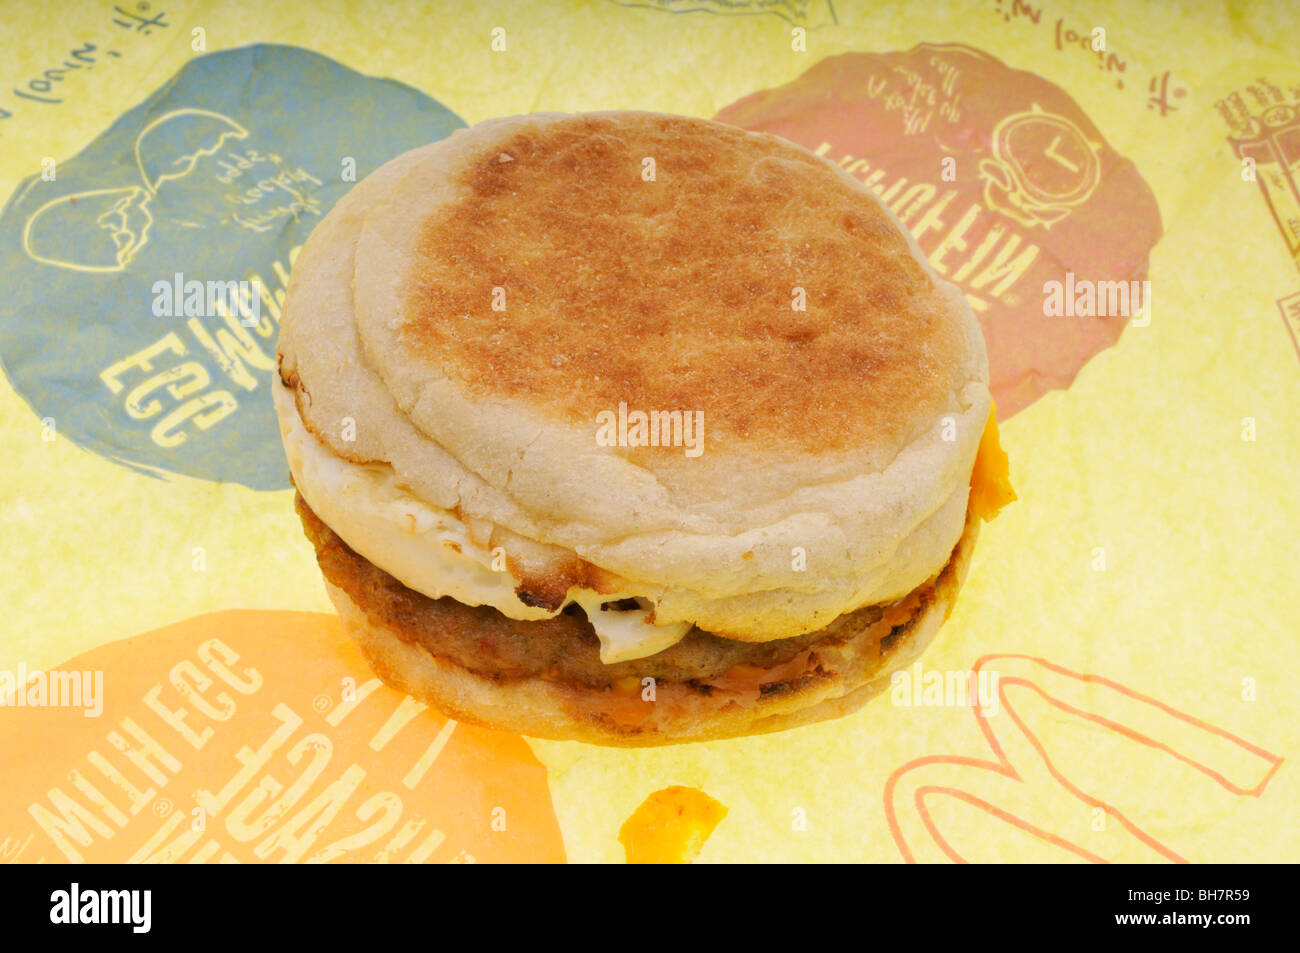 Mcdonalds wurst Ei und Käse mcmuffin Frühstück englisch muffin Sandwich auf Wrapper usa Stockfoto